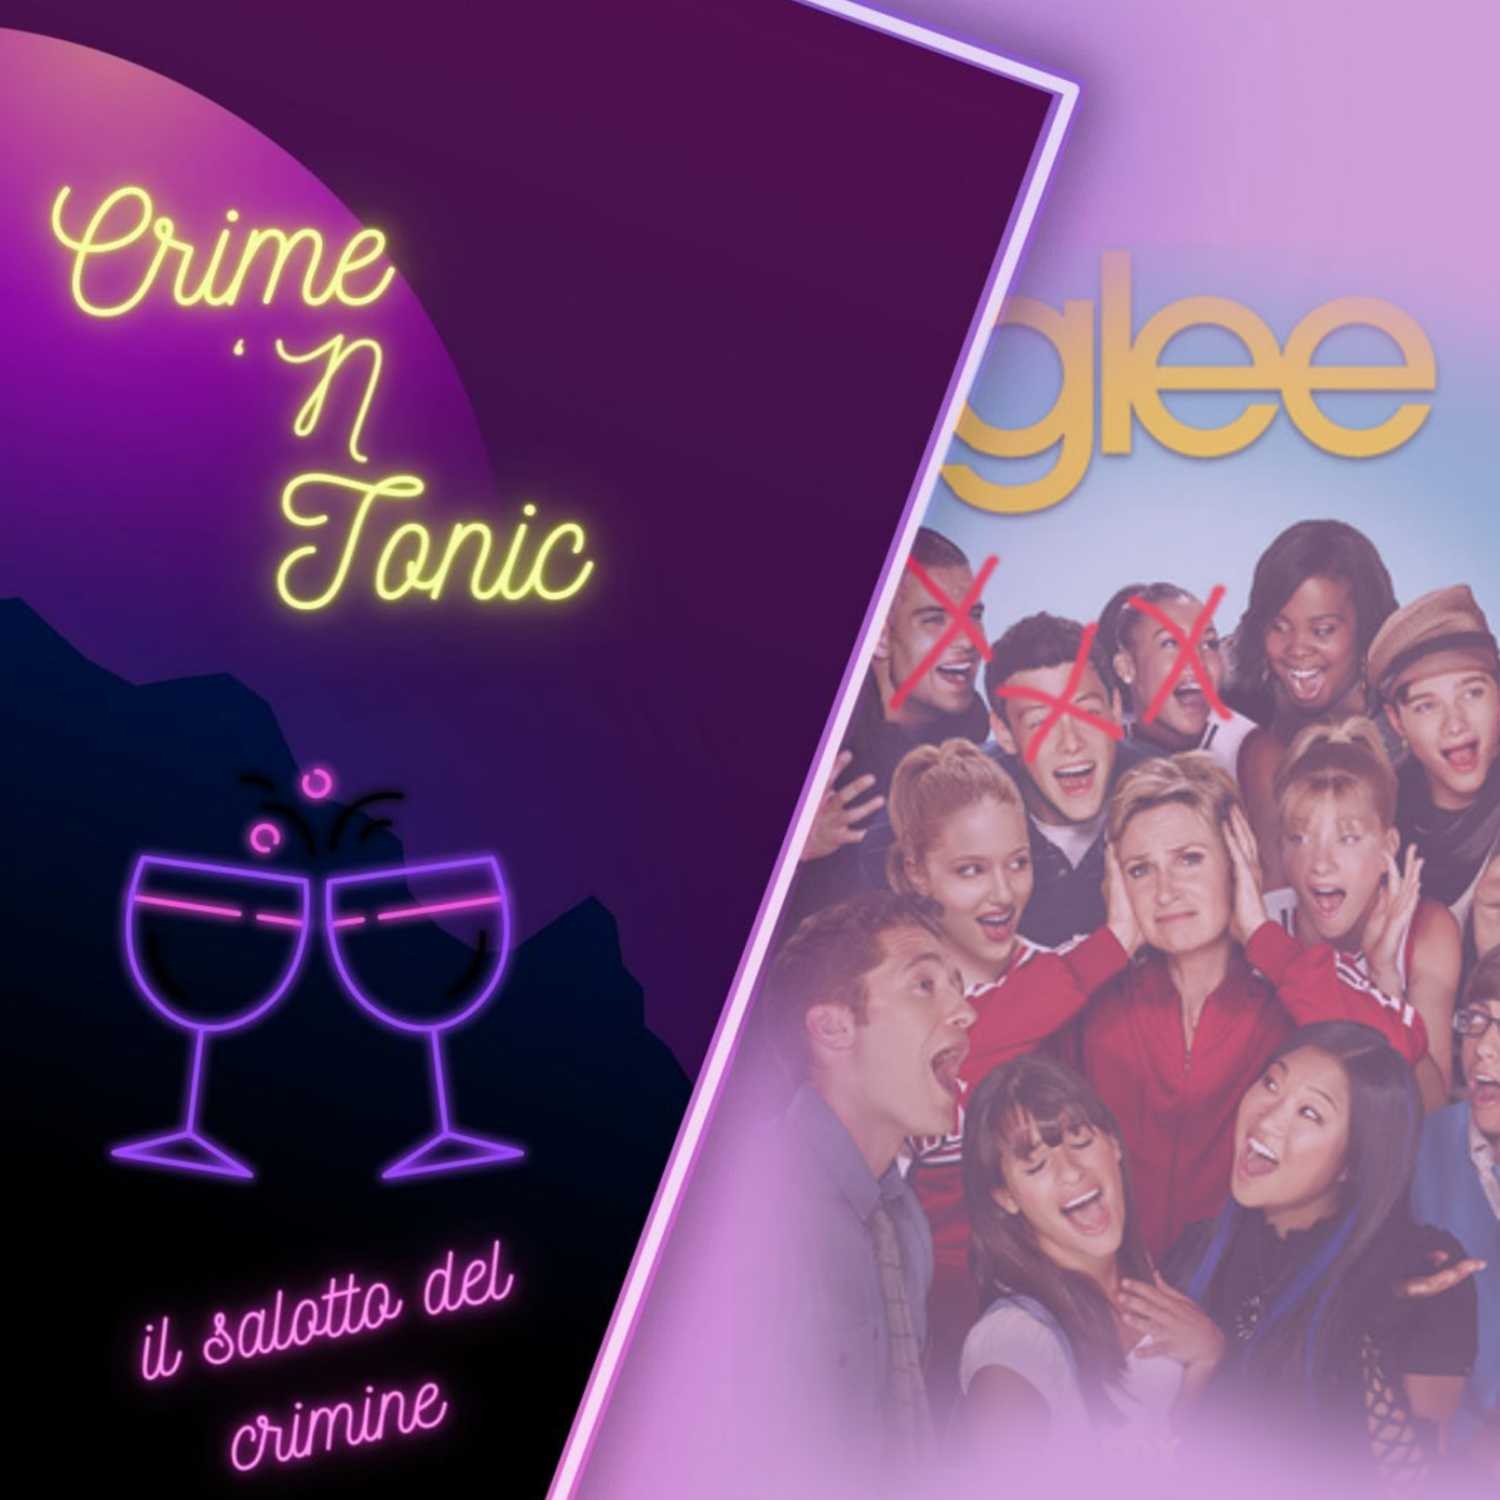 Episode 19: La maledizione di Glee